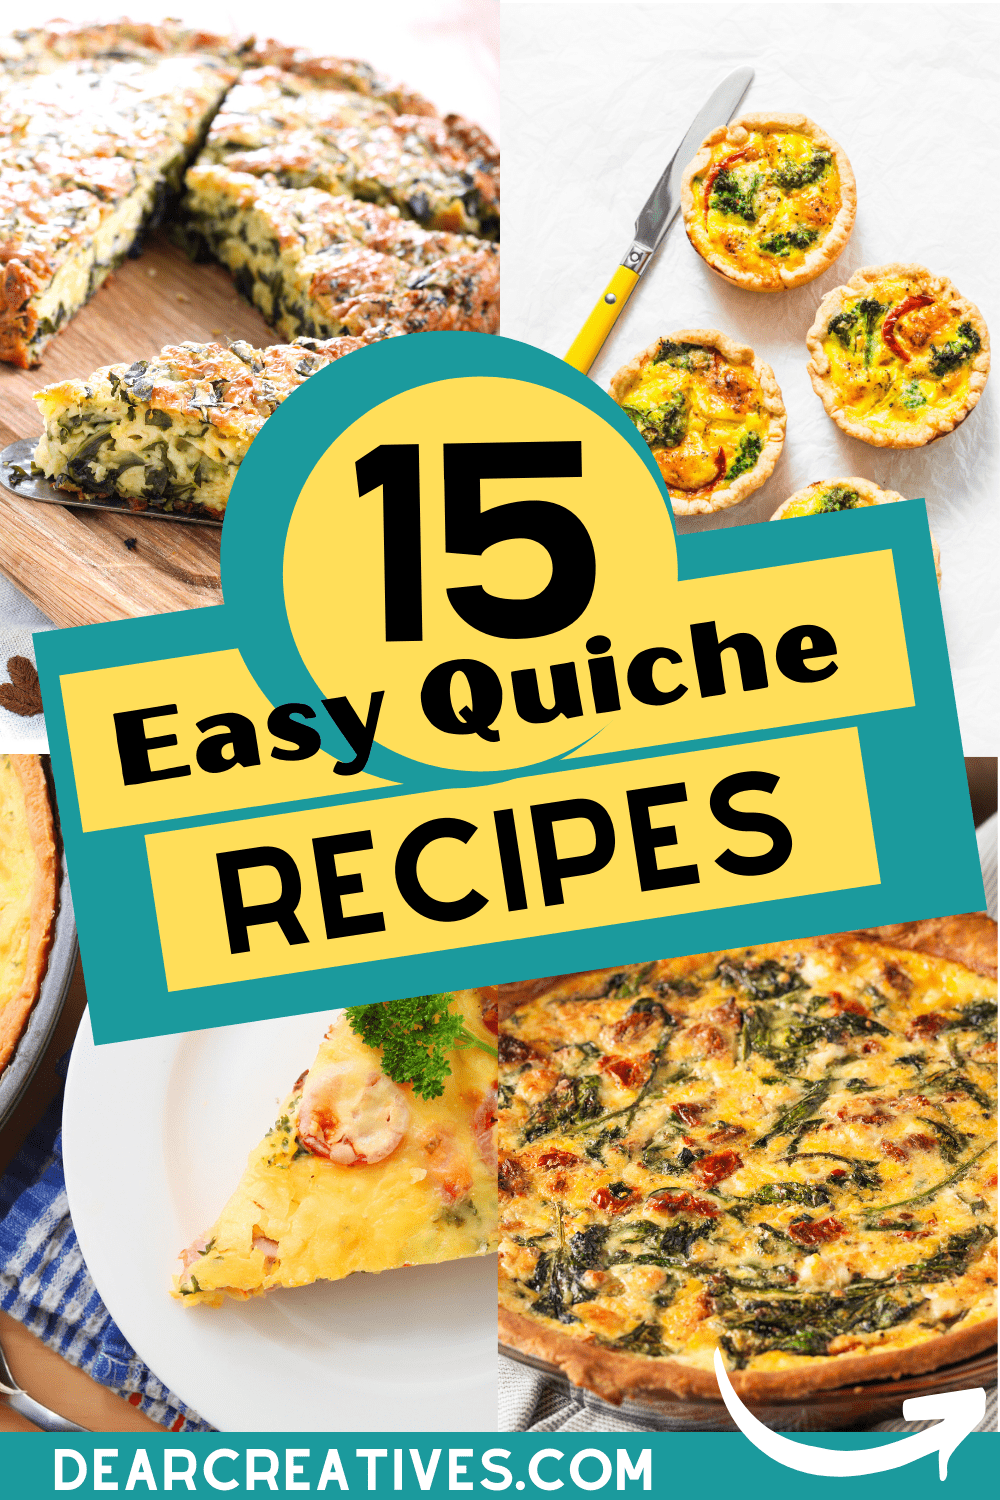 Easy Quiche Recipes To Make!